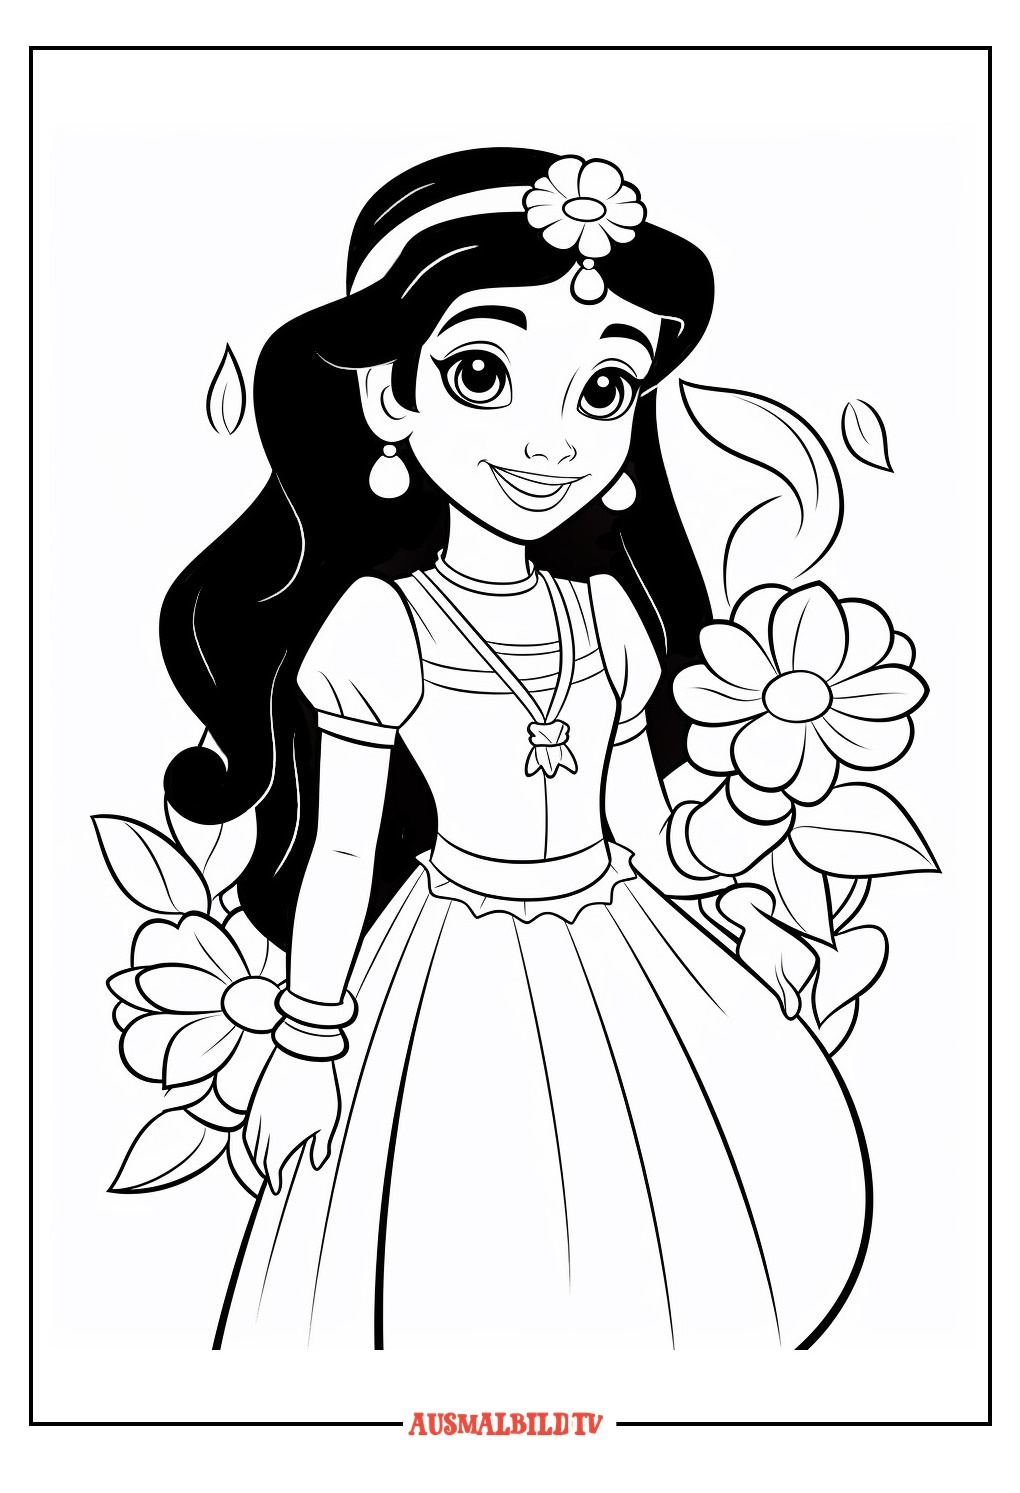 Detaillierte Prinzessin Jasmin Ausmalbild zum Ausdrucken - Disney